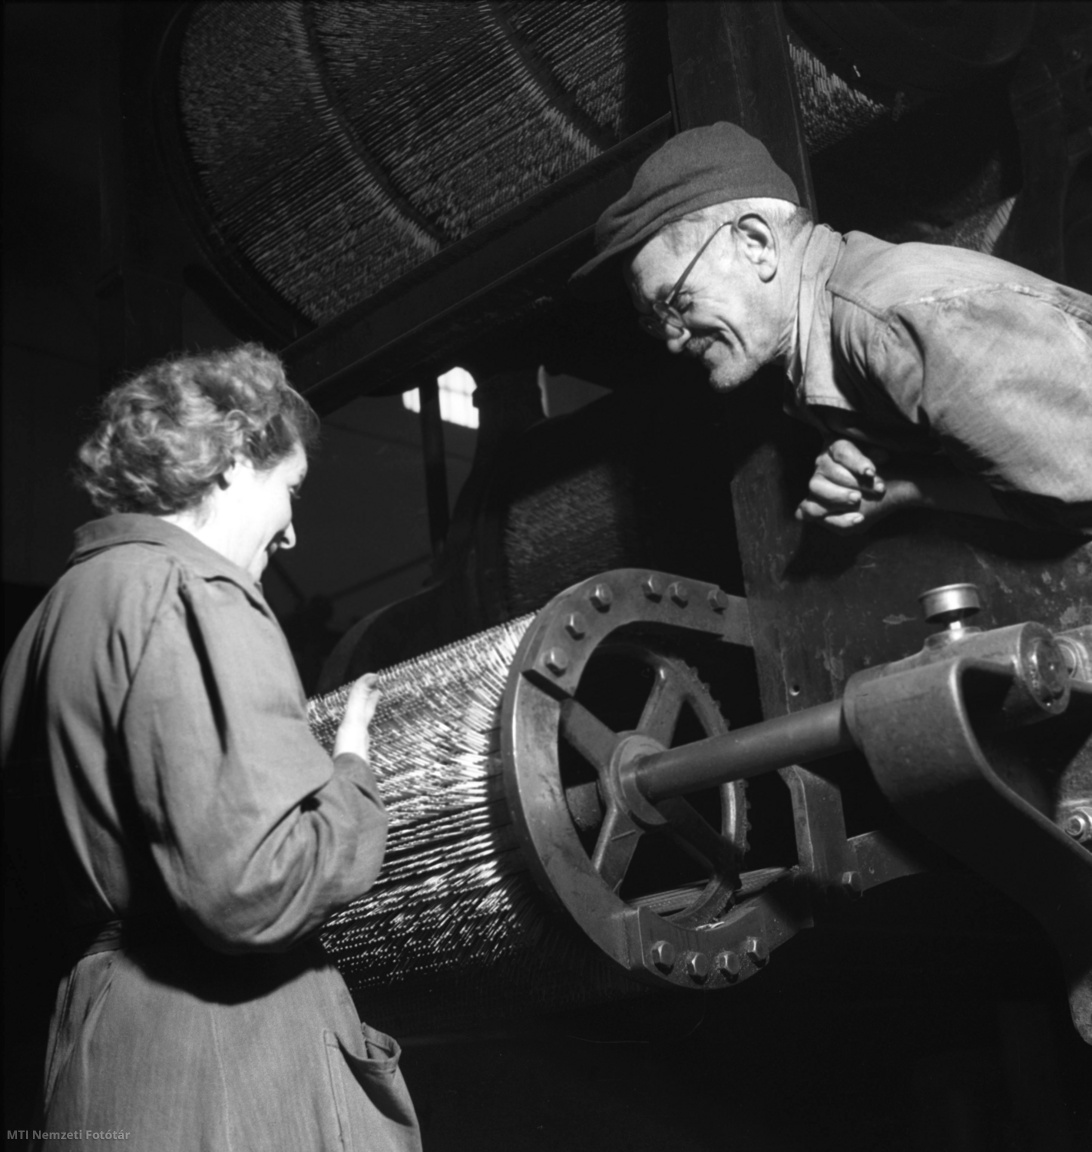 Kecskemét, 1956. február 5. Molnár Sándor karbantartó, az ország egyik legkiválóbb gyufaipari gép szakembere és Fóti Józsefné művezető a gyufagyártó gép működését ellenőrzik a Kecskeméti Gyufagyárban.